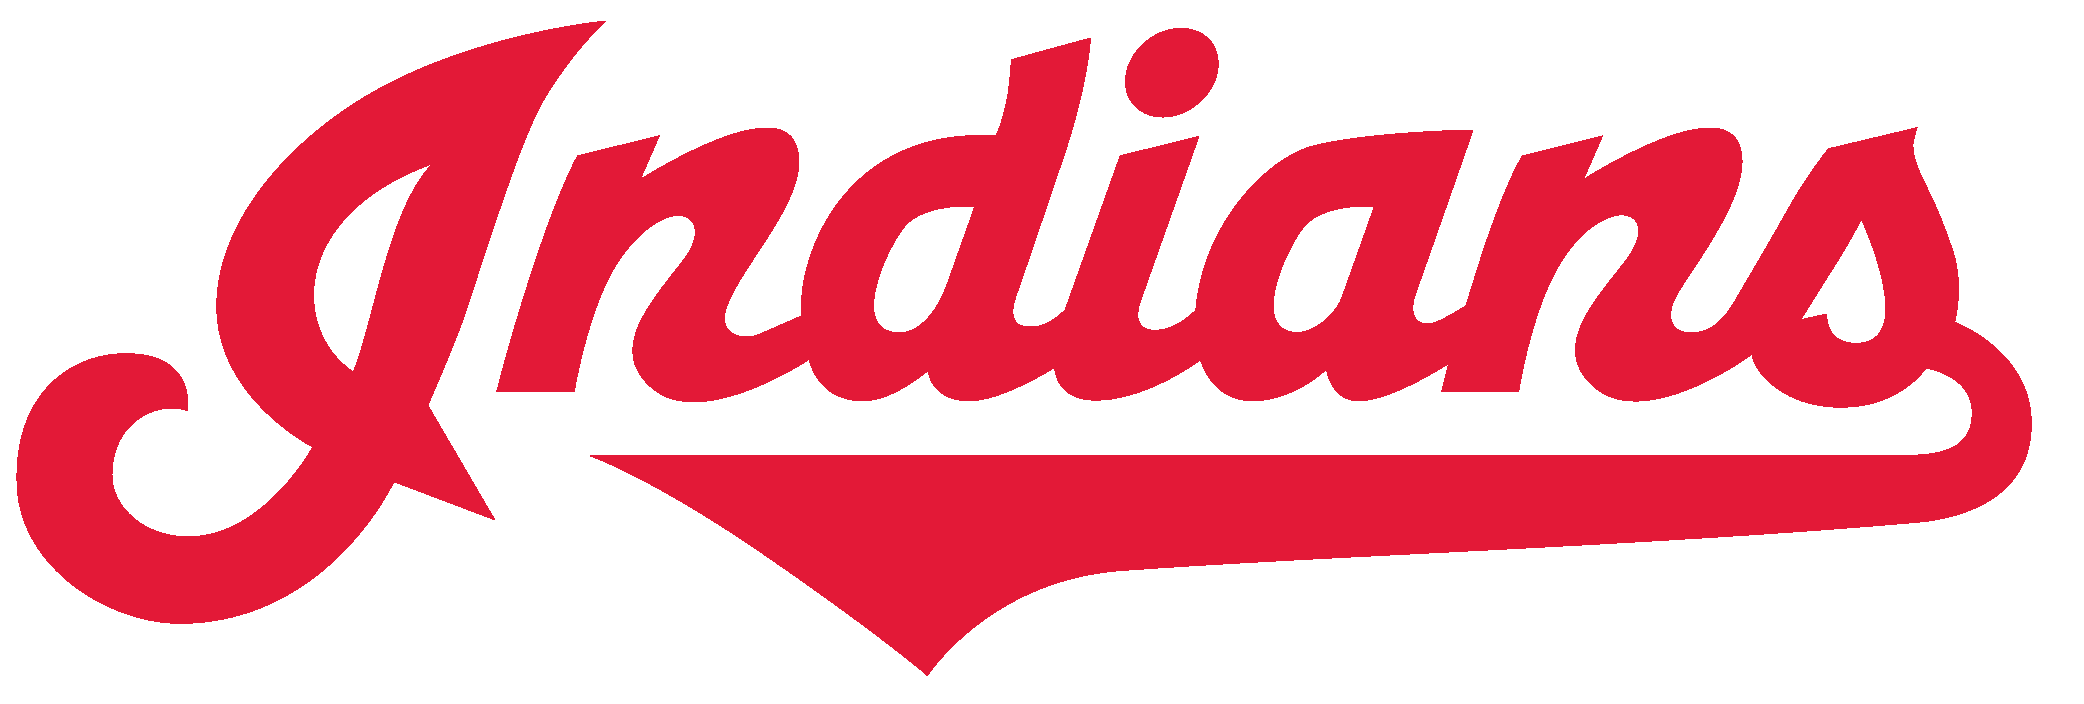 Cleveland Indians Logo - Cleveland Indians Logo Svg (2084x704)